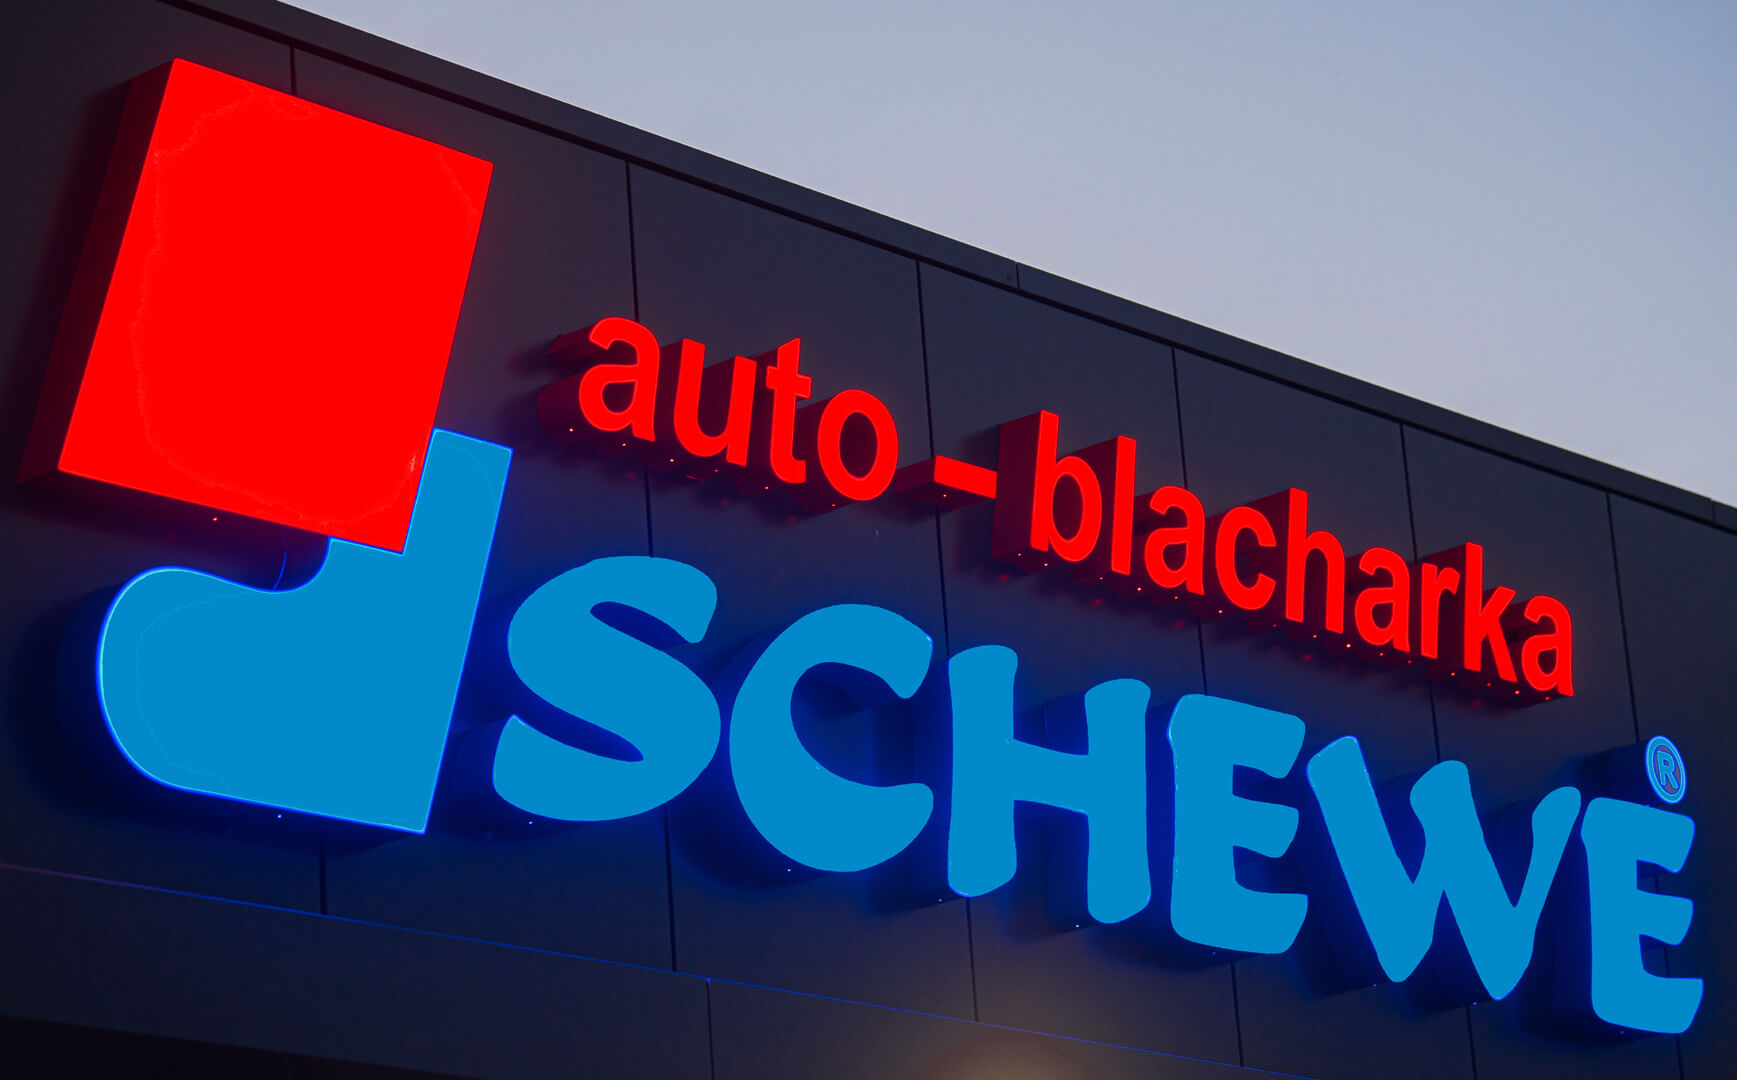 Auto blacharka Schewe - Letras LED 3D, iluminadas frontal y lateralmente de plexiglás.